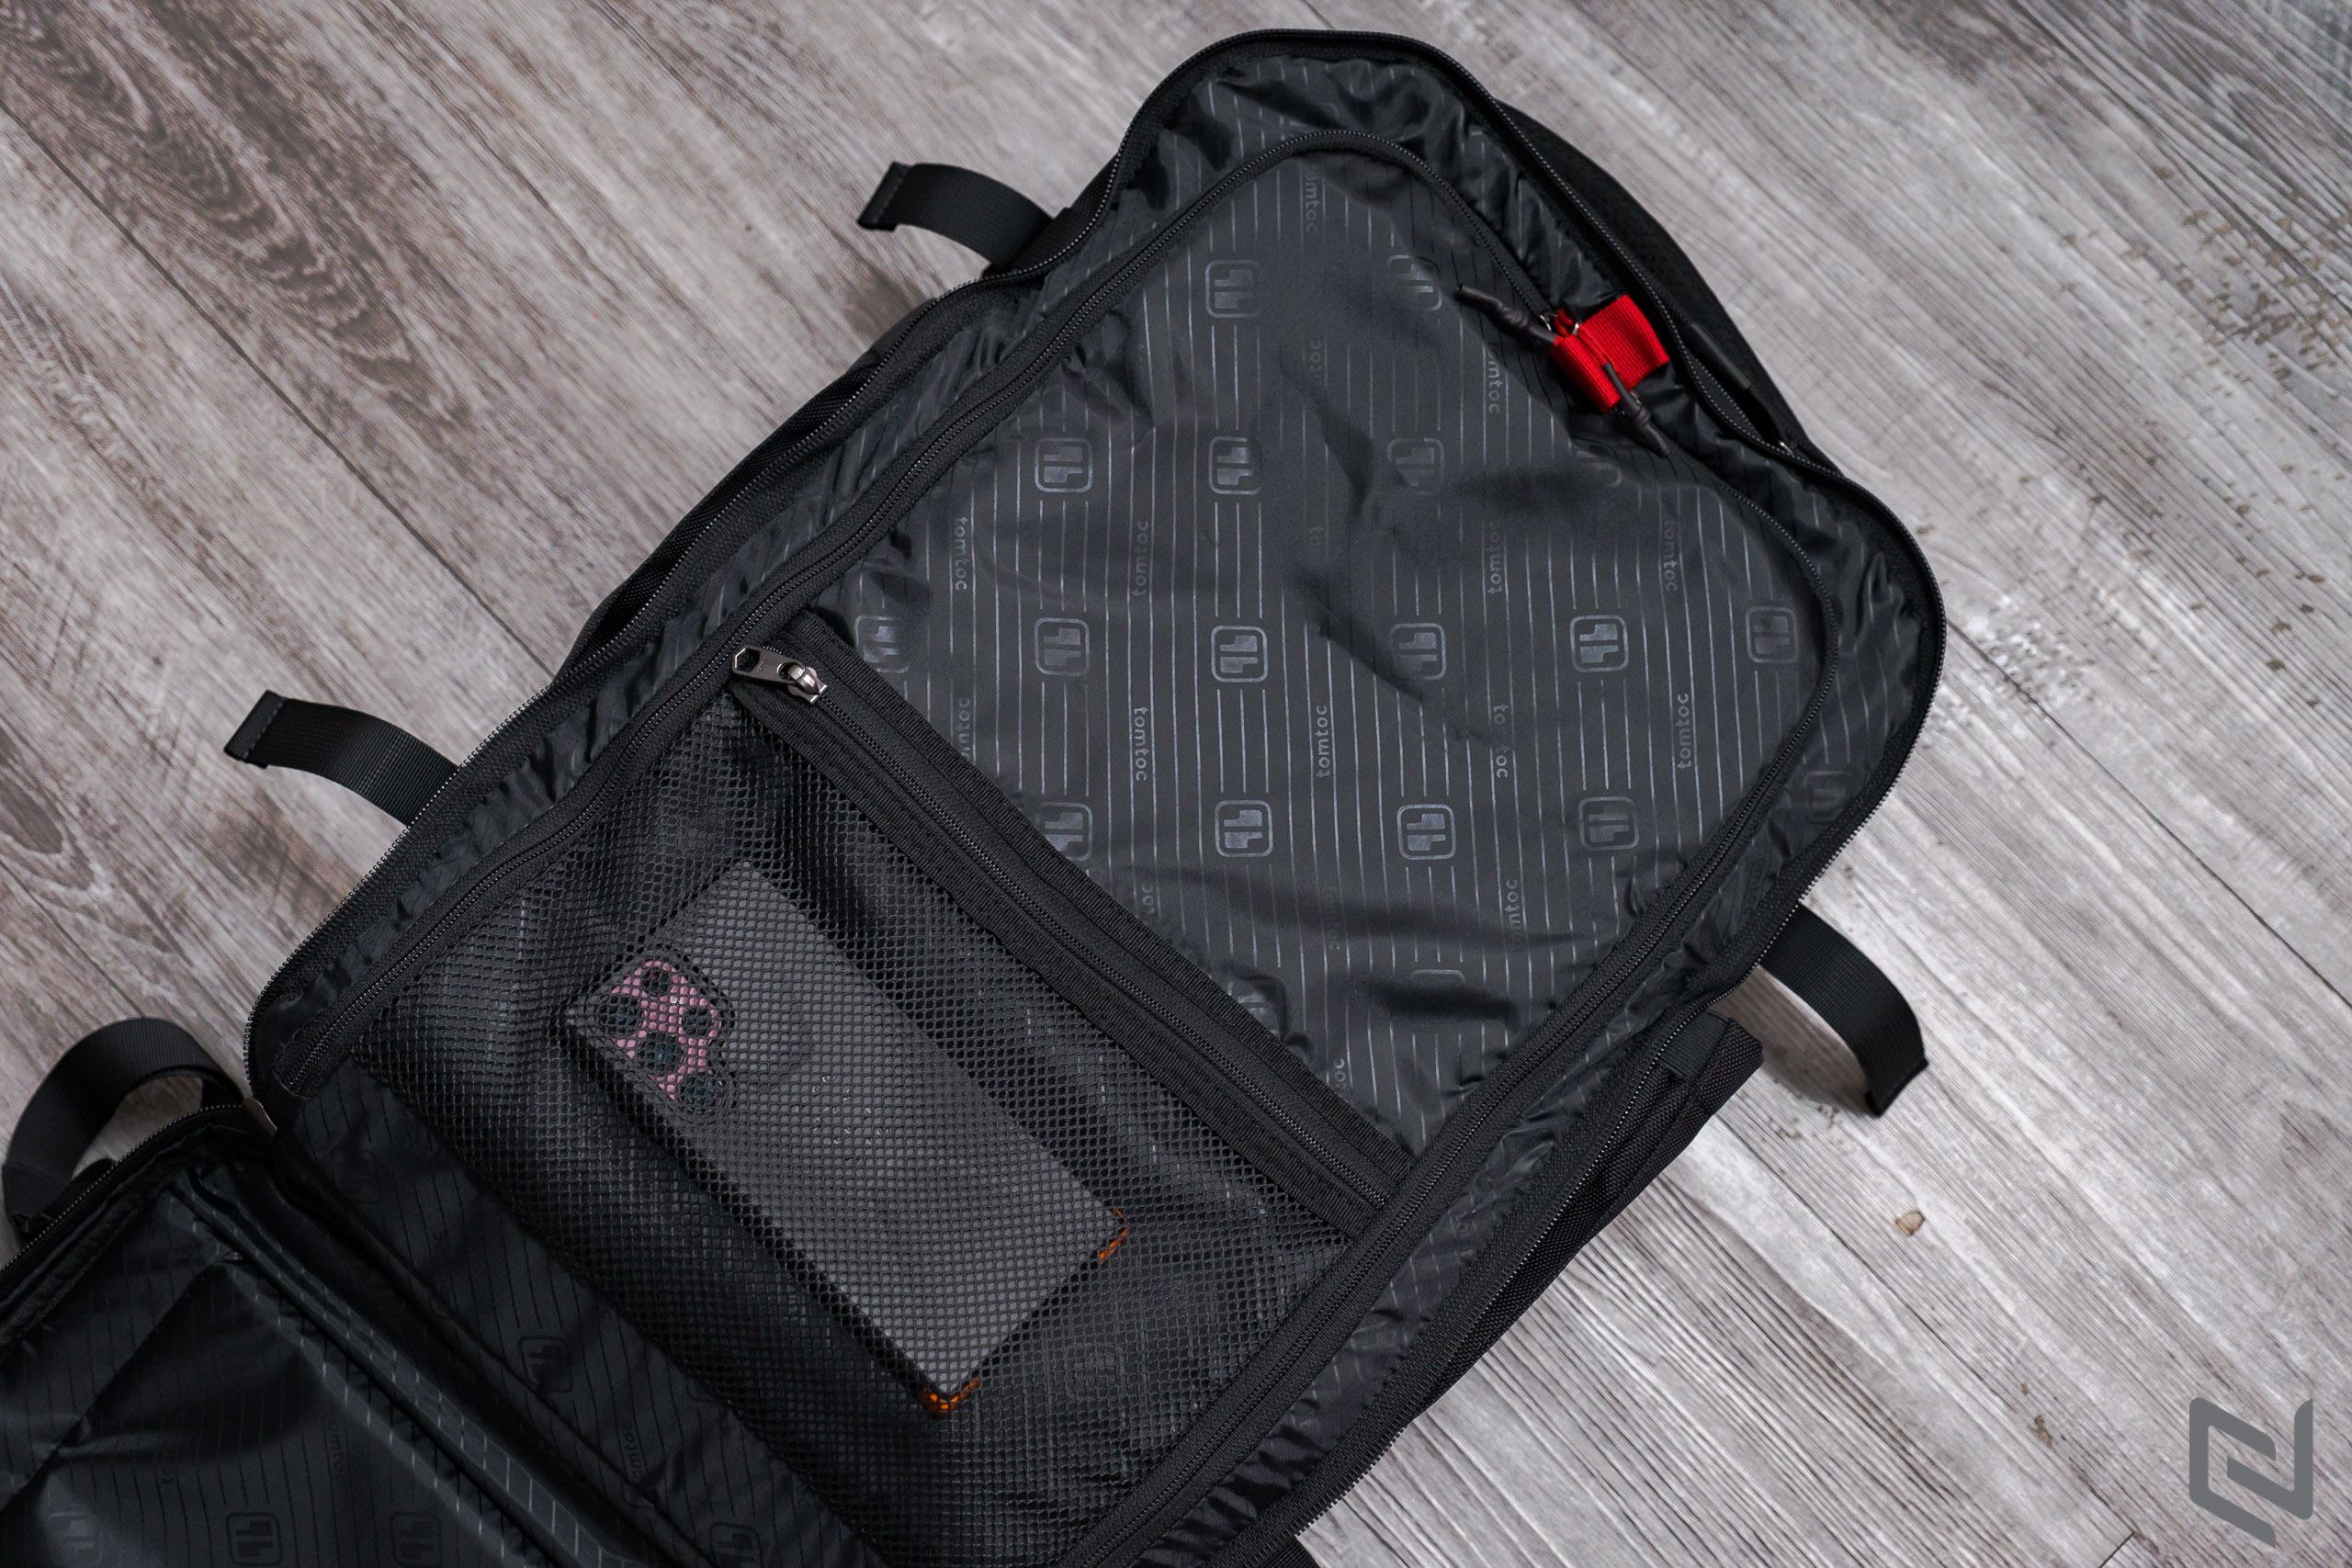 Trên tay balo TomToc Travel Backpack 40L, balo du lịch tiện lợi với ngăn chứa cực rộng